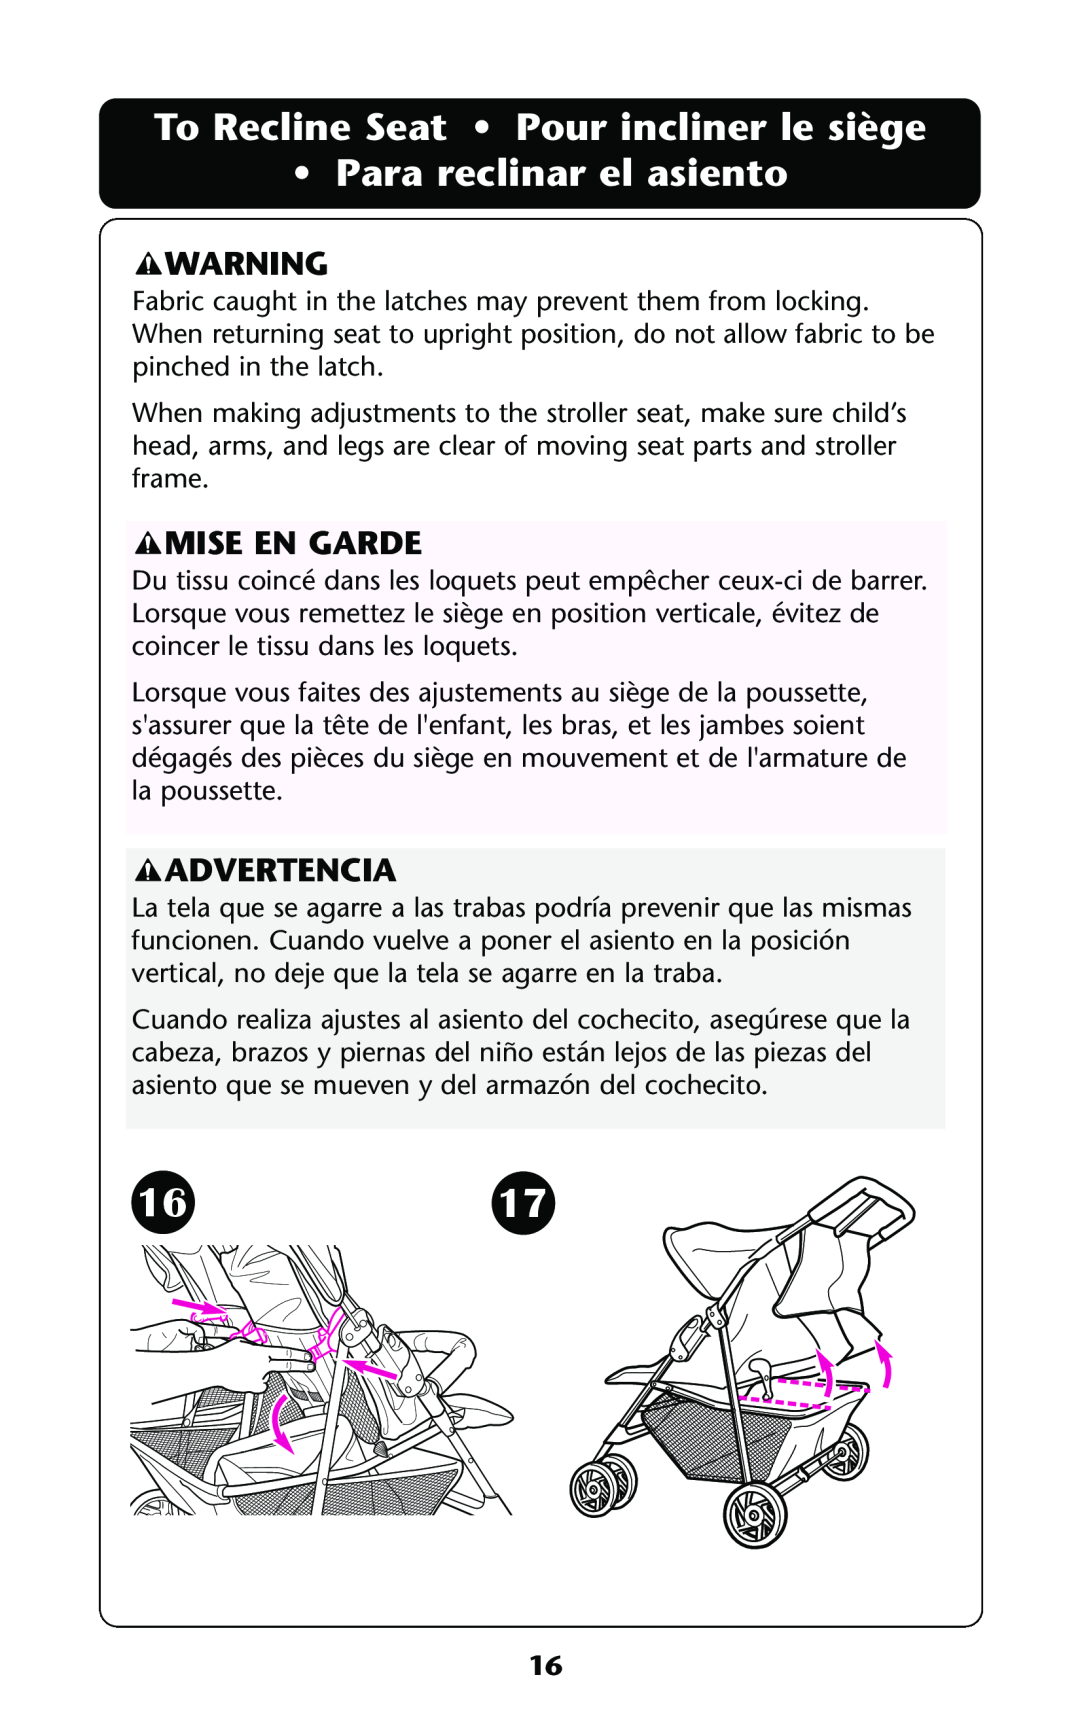 Graco ISPA114AB manual 1617, To Recline Seat Pour incliner le siège Para reclinar el asiento, Mise En Garde, Advertencia 